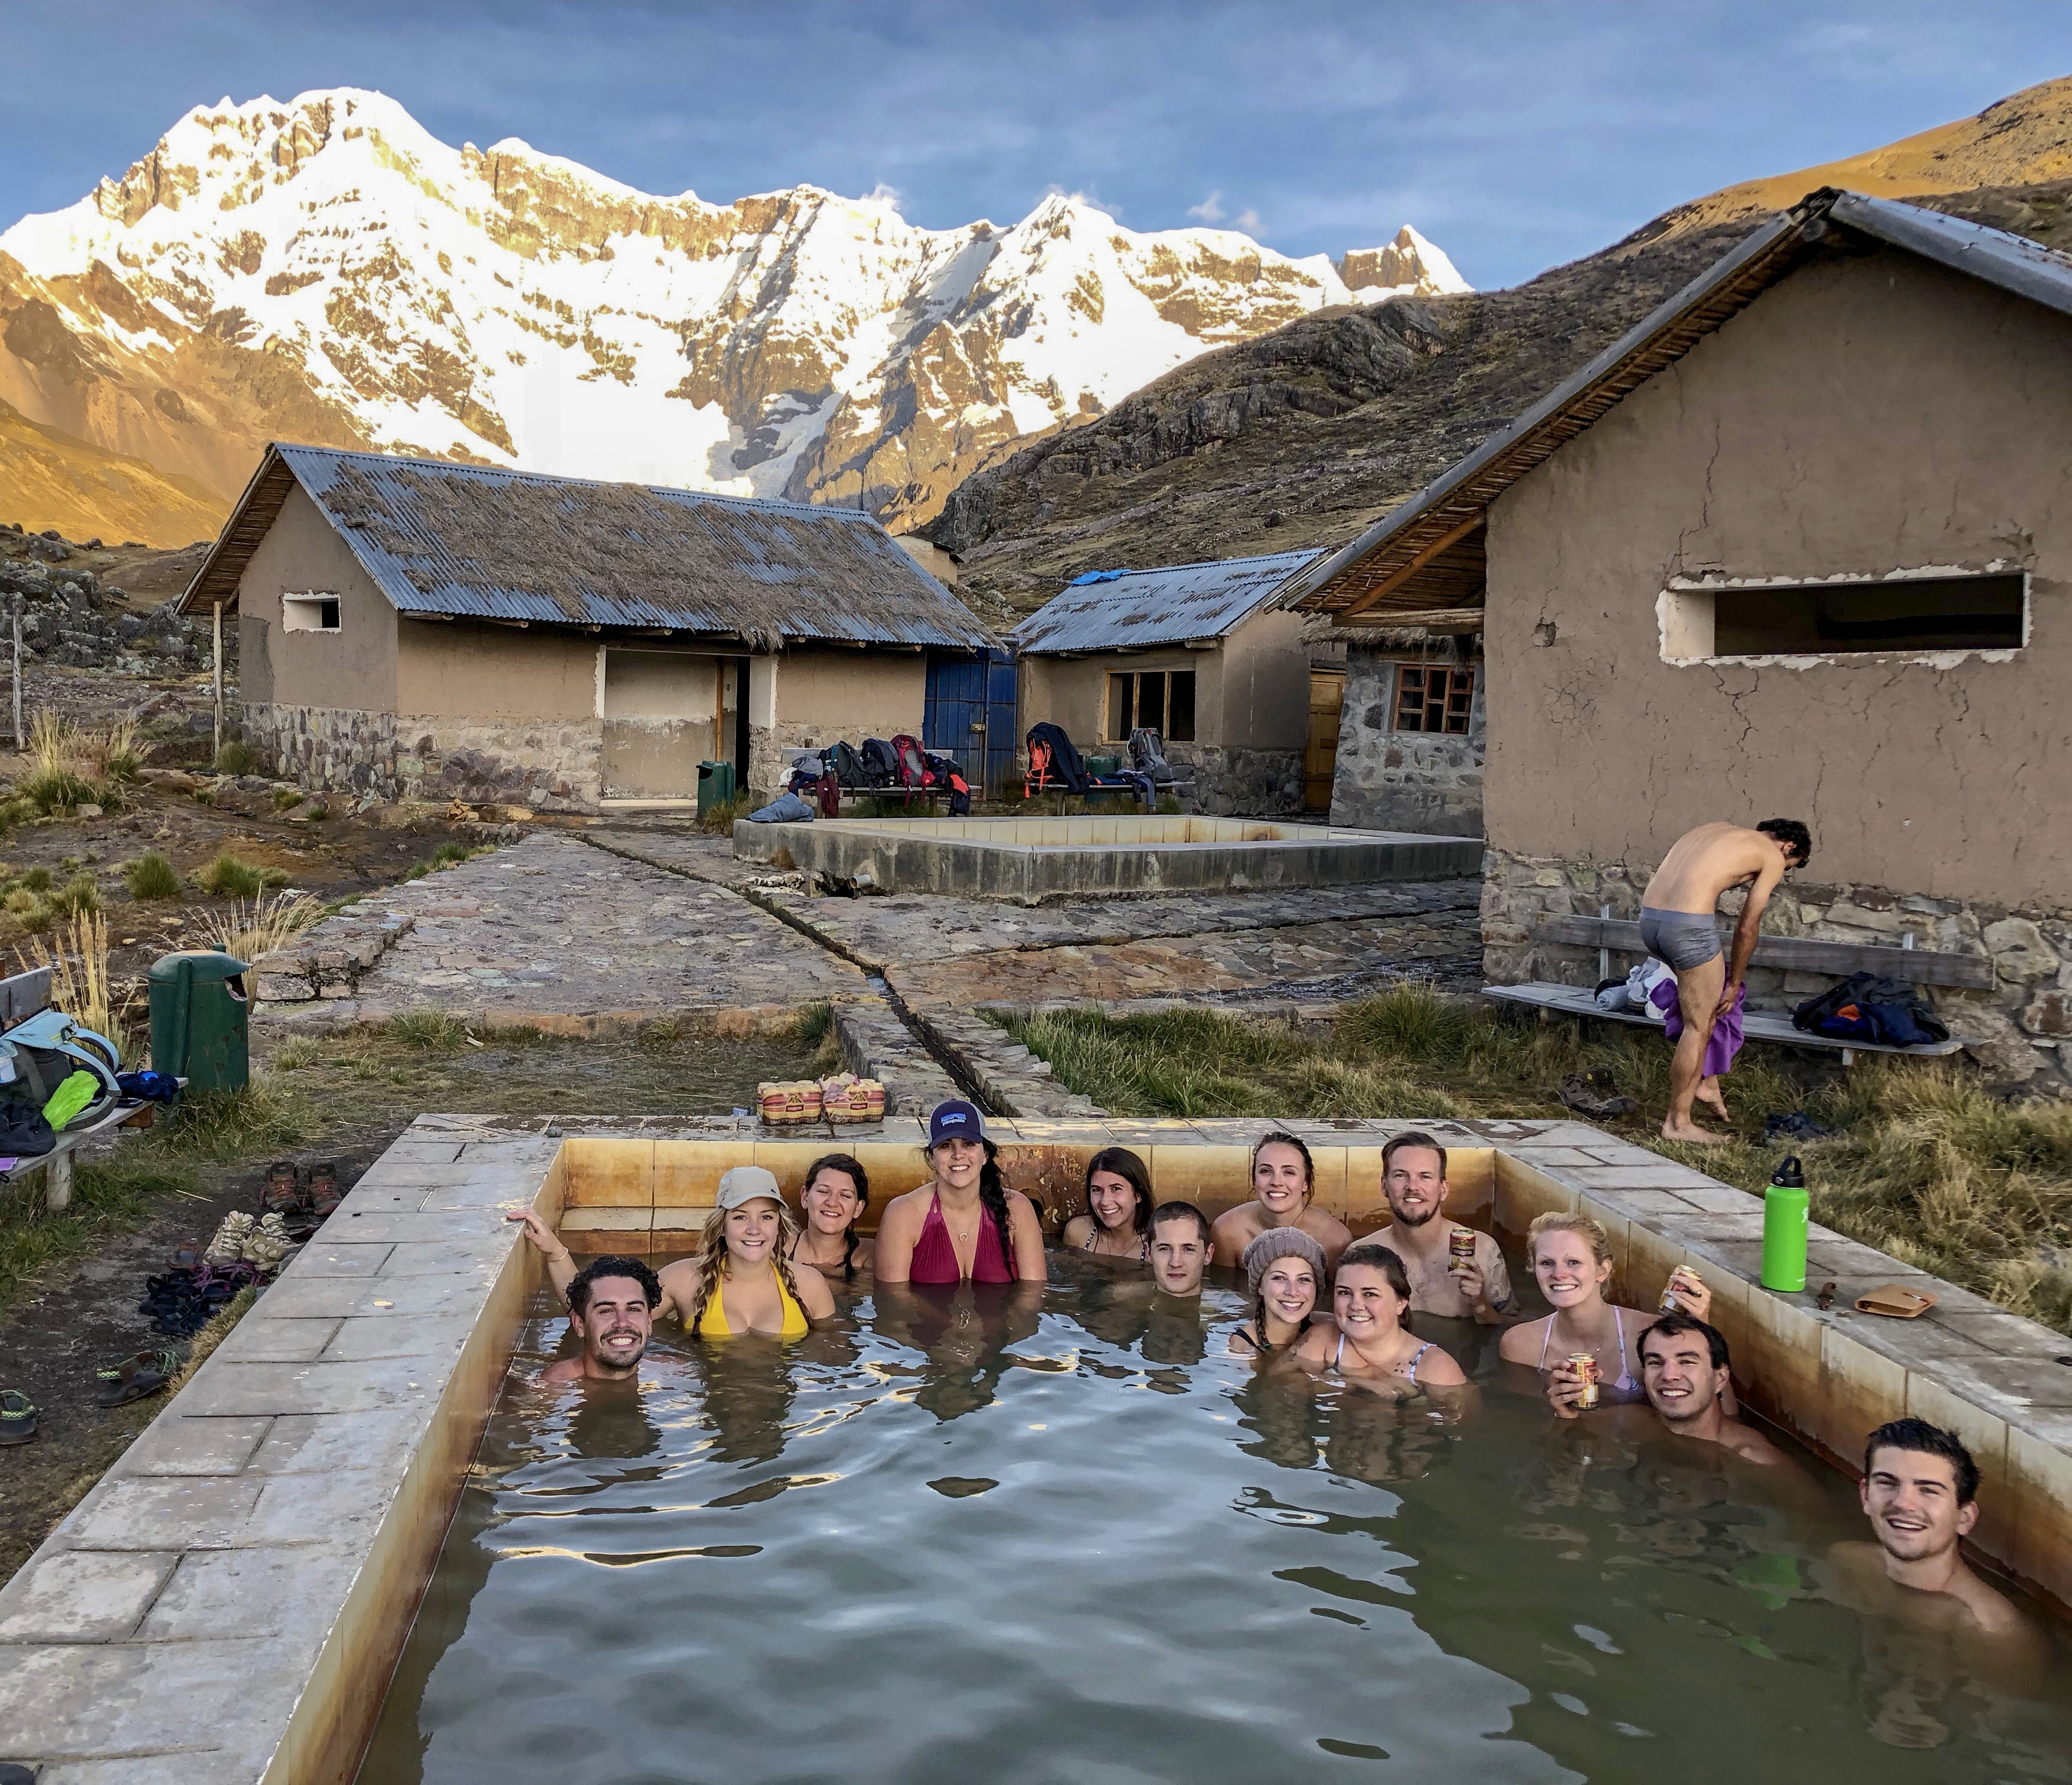 Peru, Ausangate, hot spring